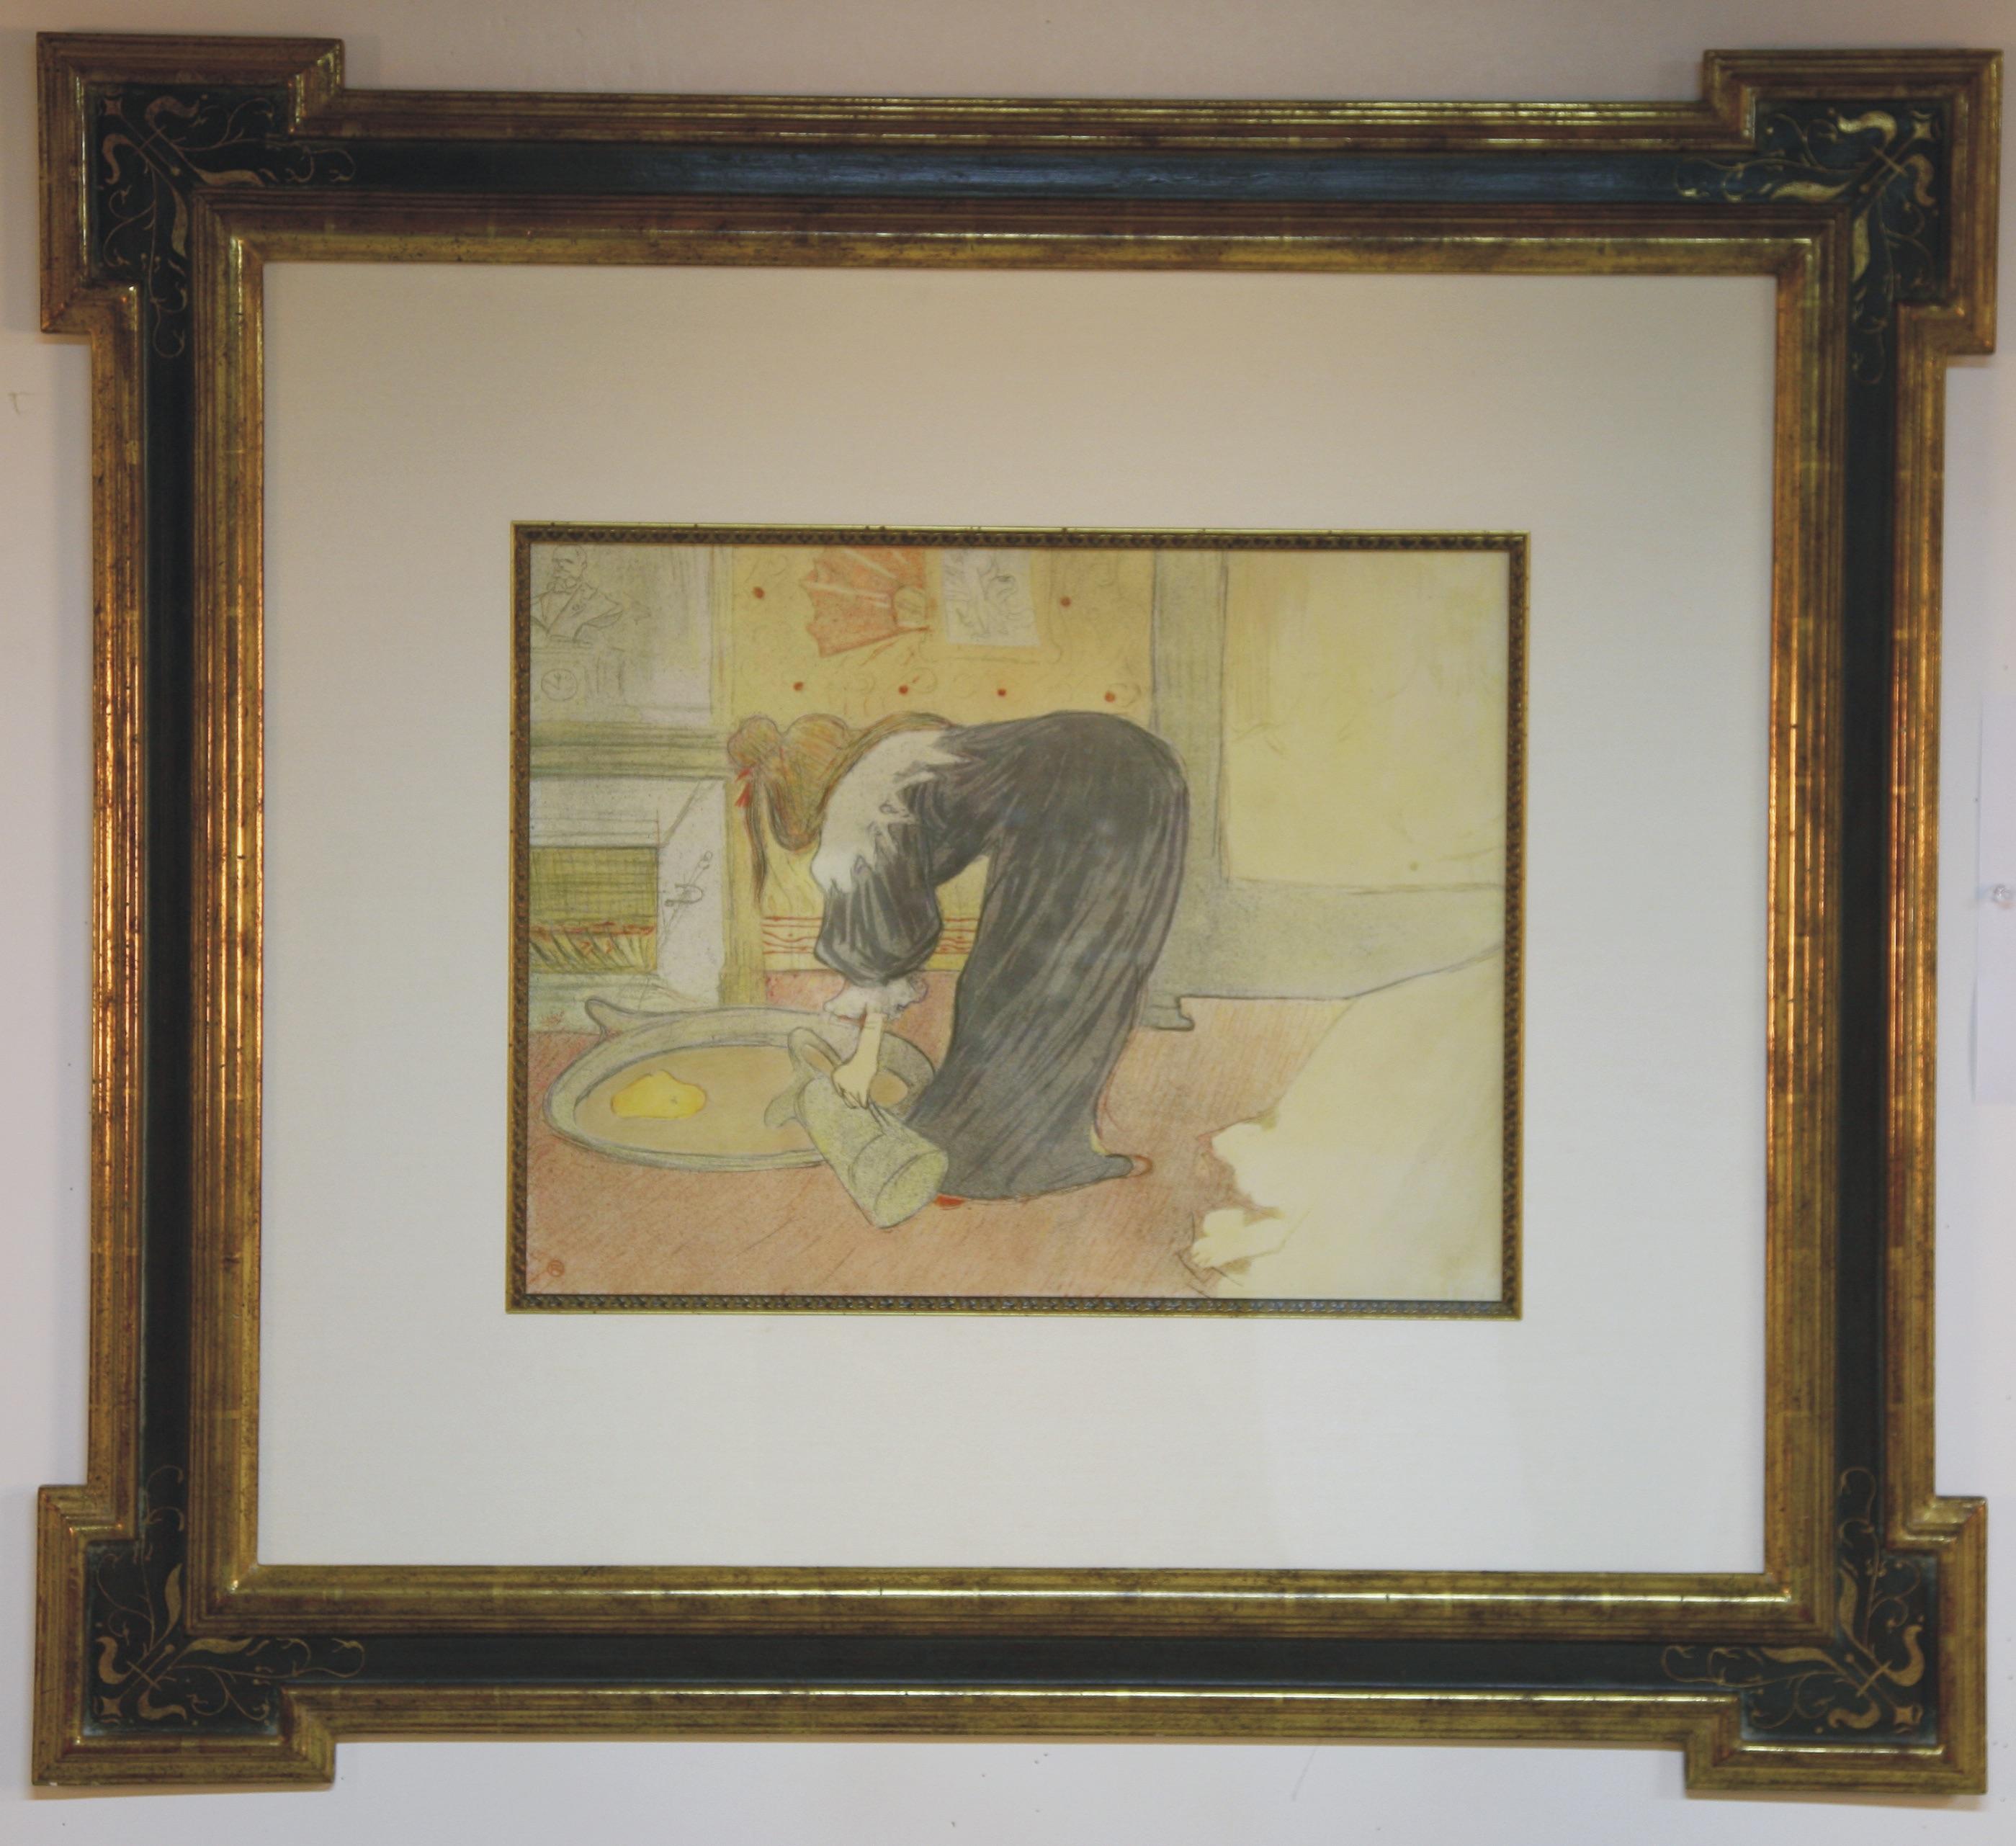 Henri de Toulouse-Lautrec Figurative Print - "Femme au Tub" from "Elles" by Toulouse-Lautrec